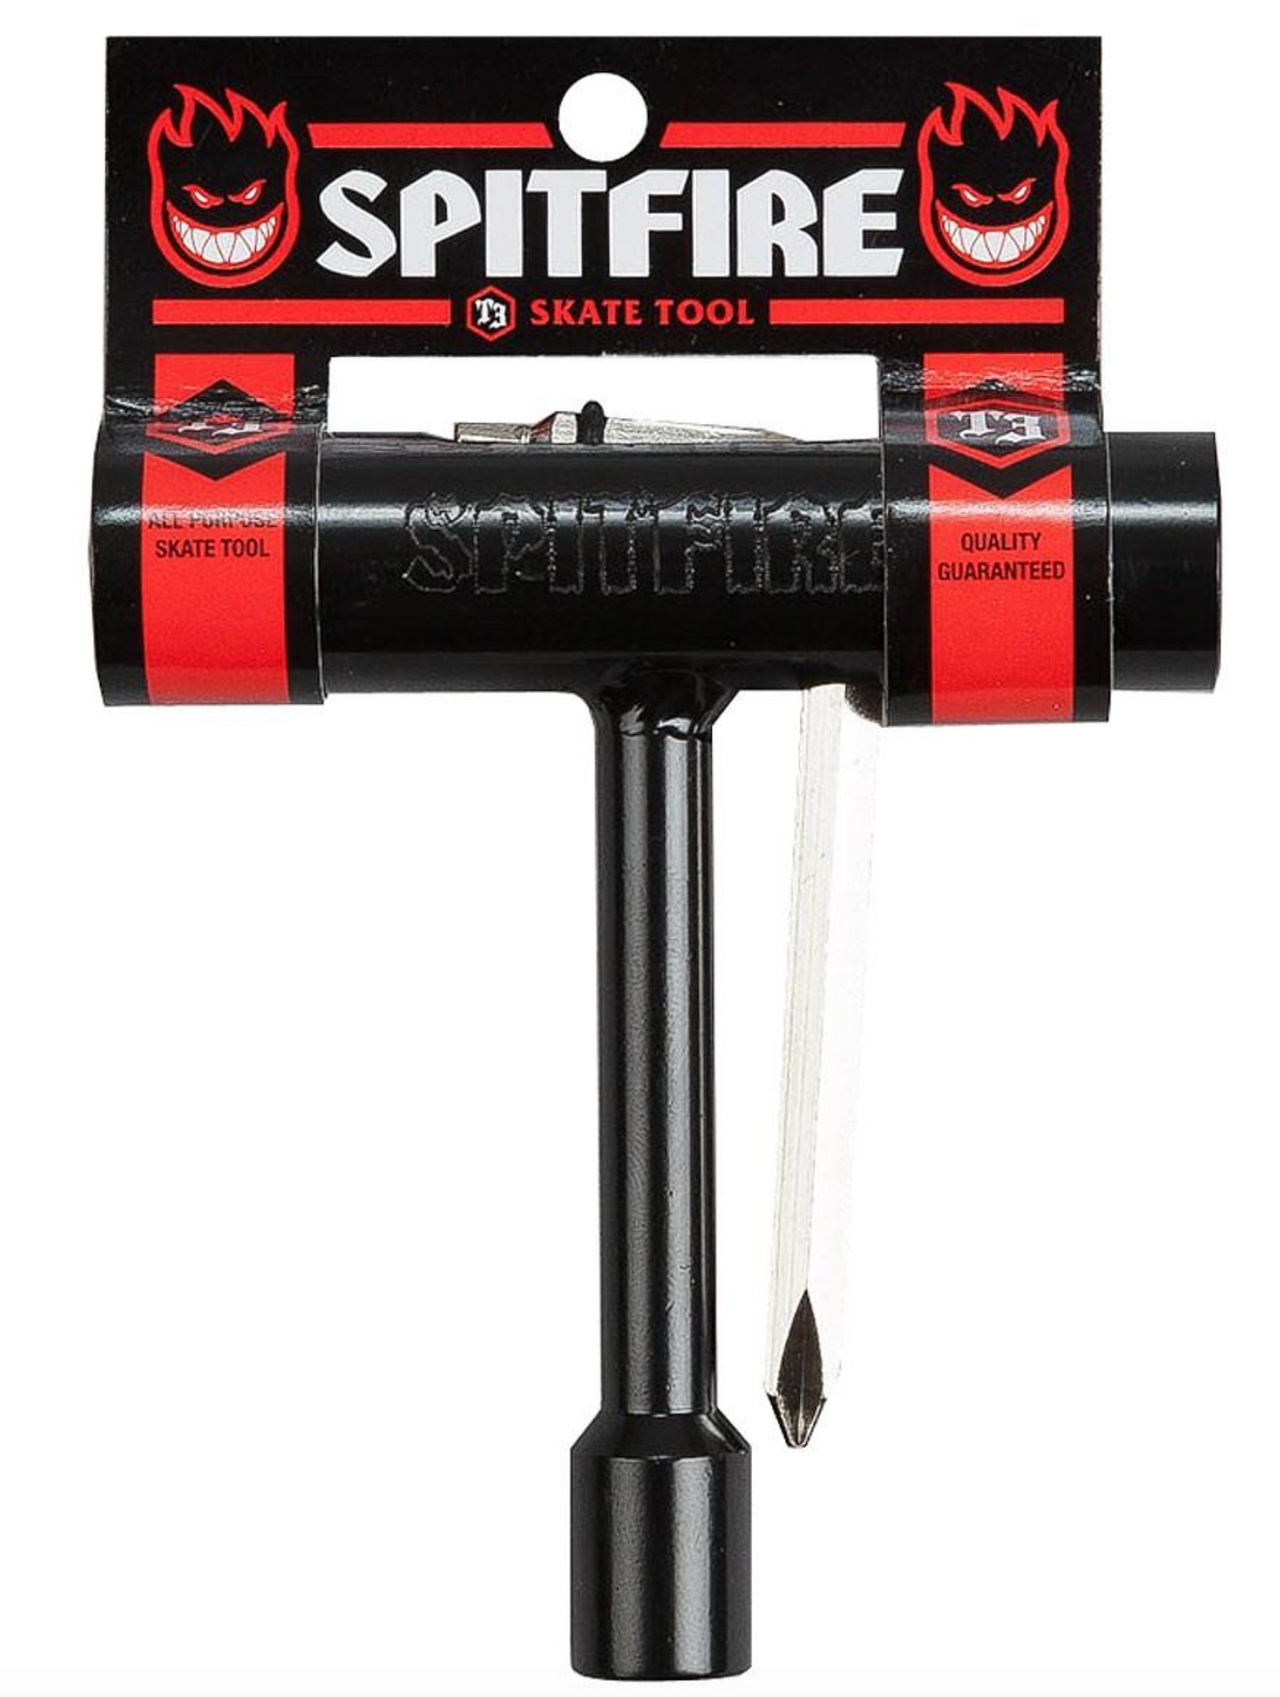 Spitfire T3 Skate Tool - Black